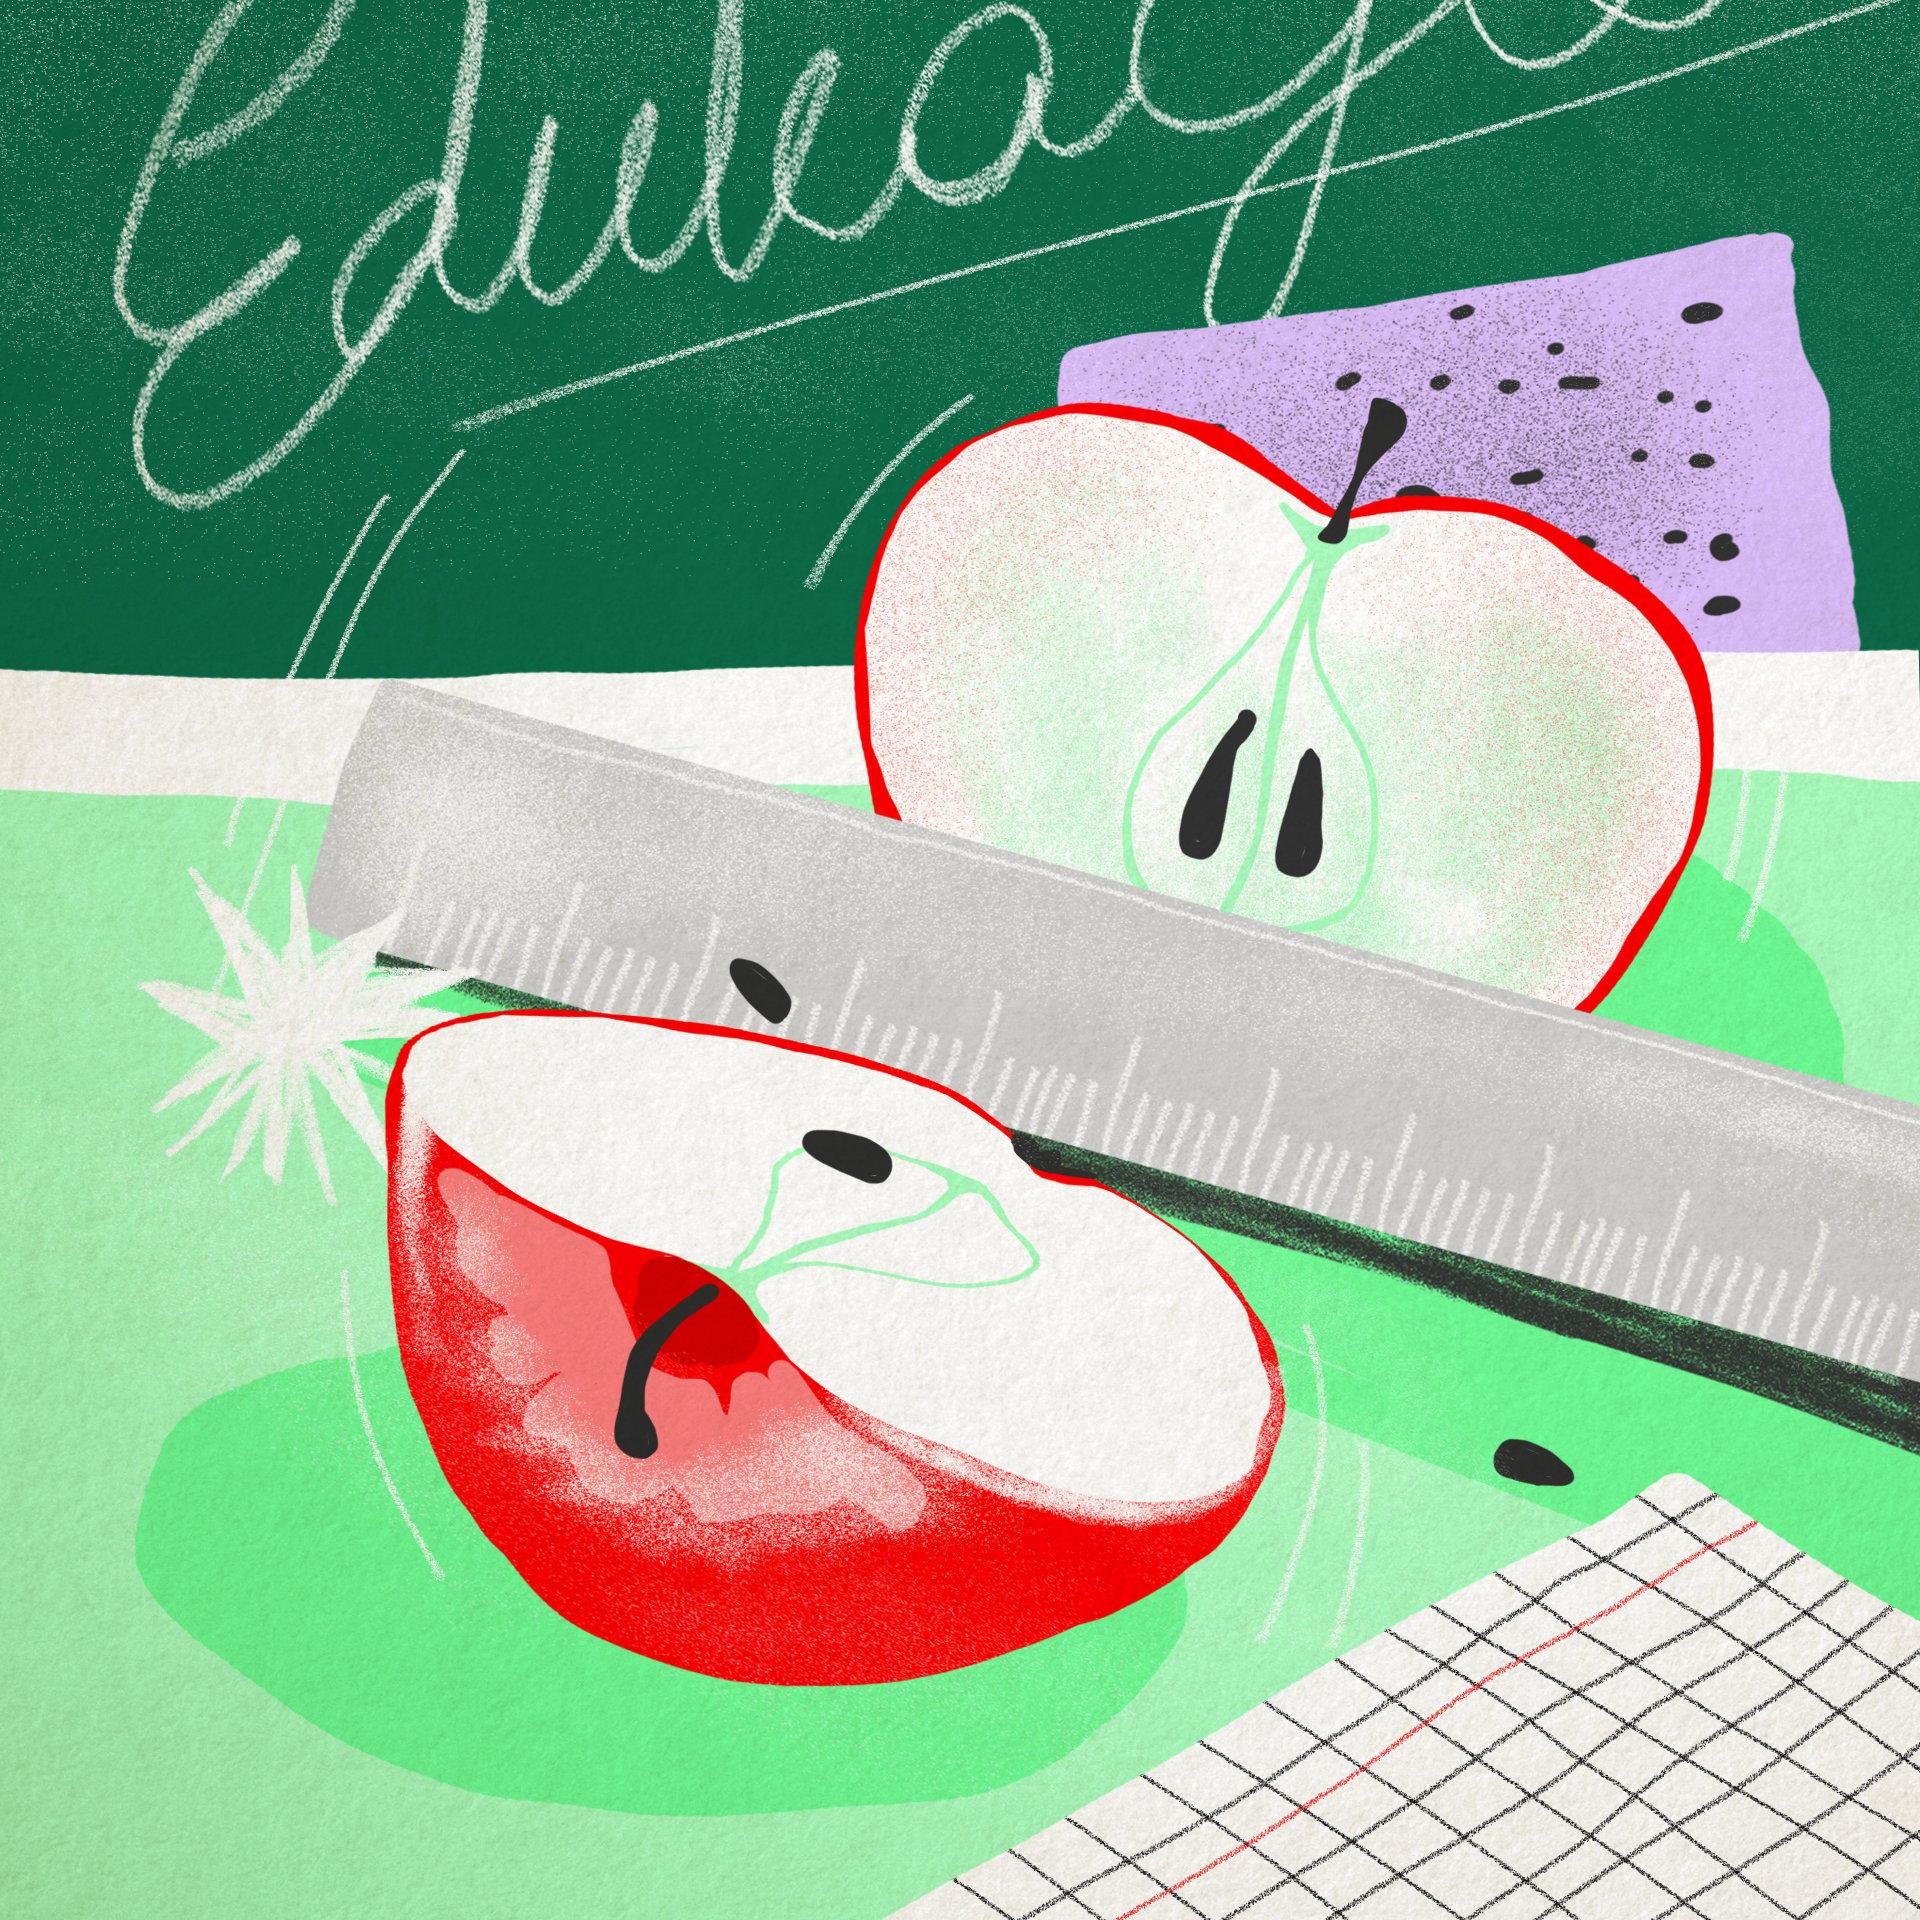 Ilustracja przedstawia jabłko rozcięte przy pomocy linijki. W tle tablica szkolna